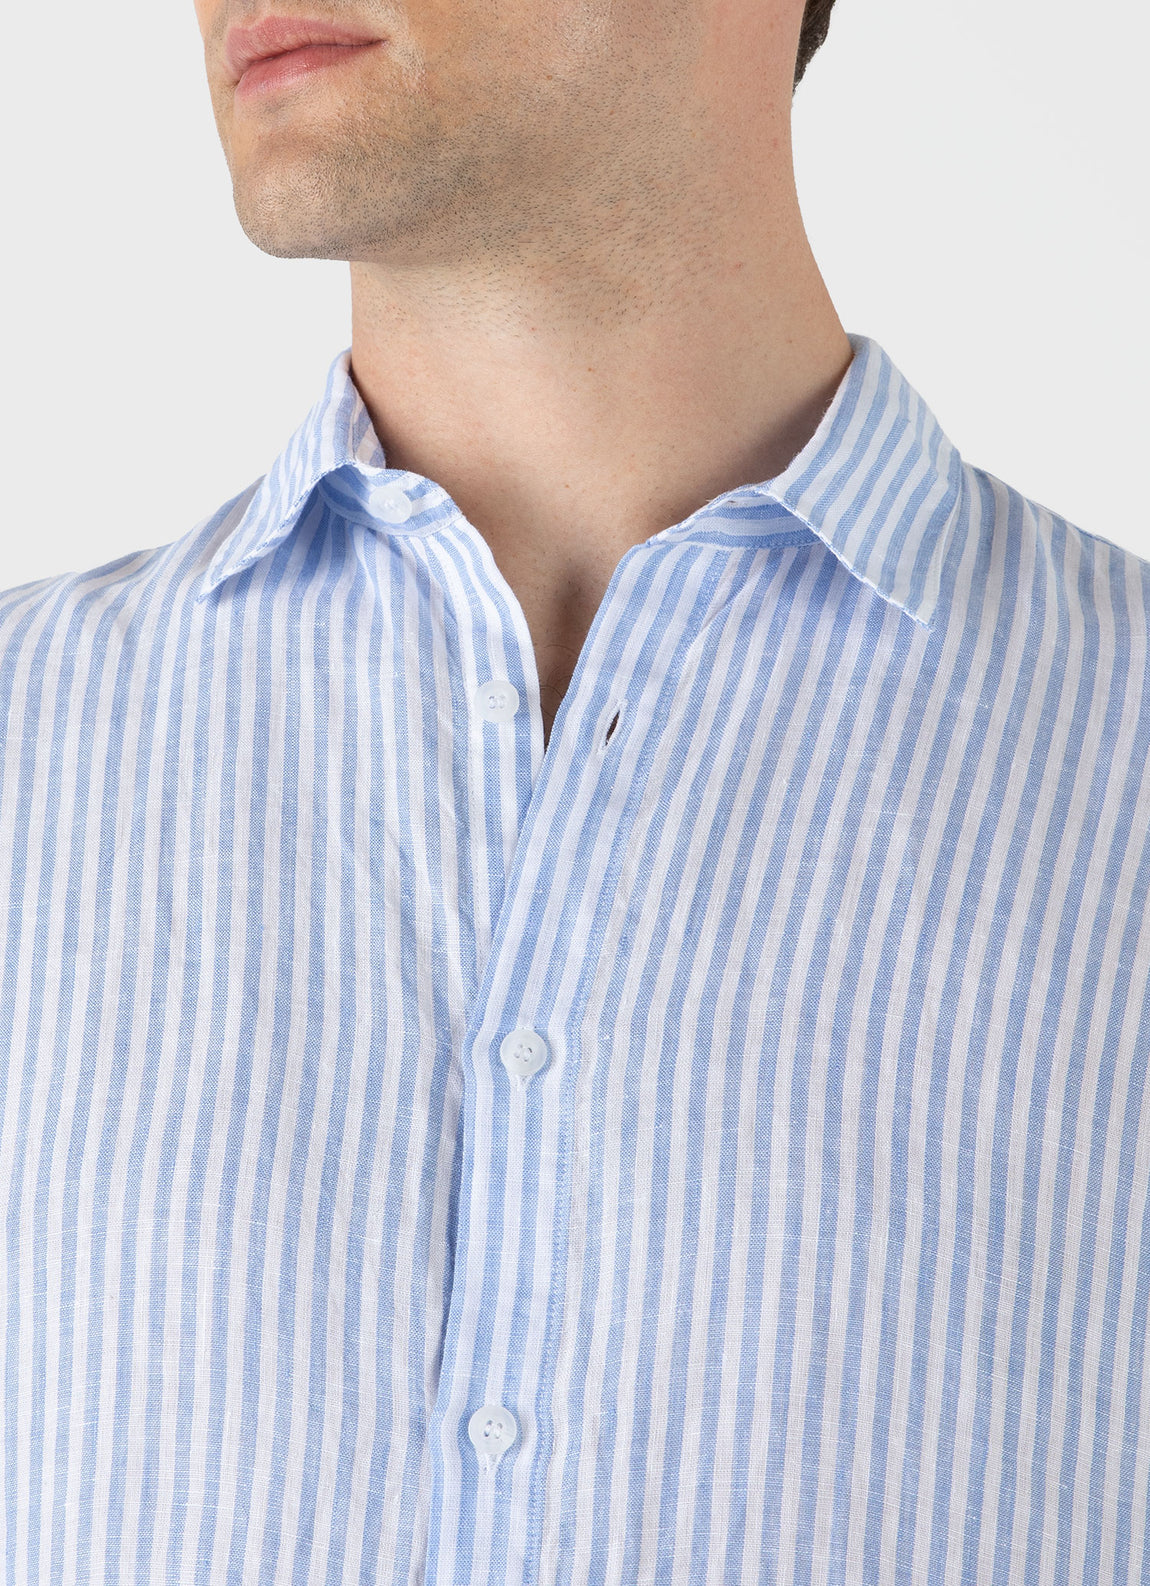 Men's Linen Shirt in Mid Blue/White